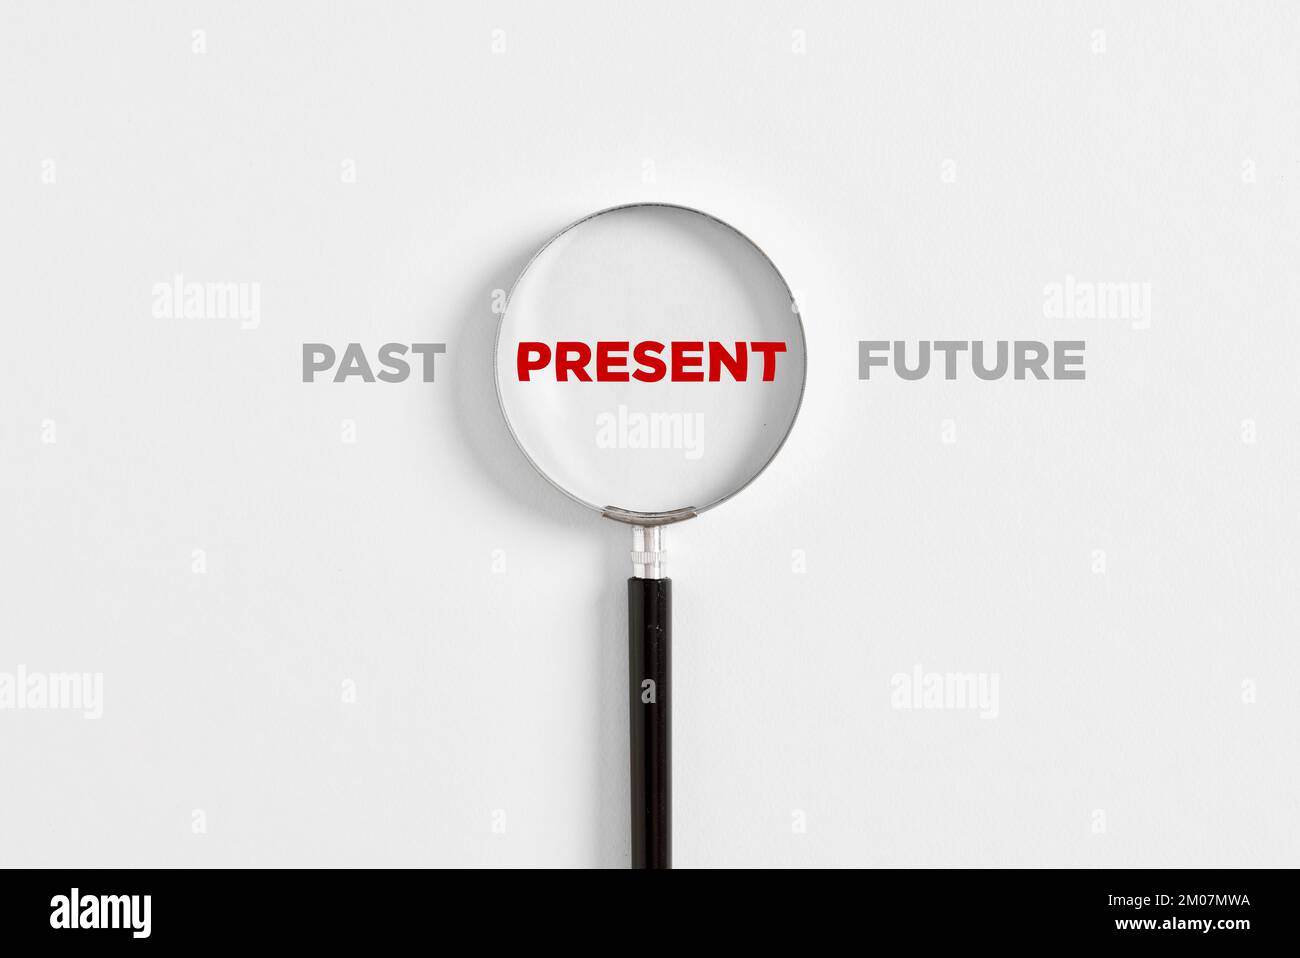 Konzentration auf die aktuelle Situation, positives Denken und Denkmuster. Lupe auf das Wort "präsent" mit den Worten "Vergangenheit" und "Zukunft". Stockfoto